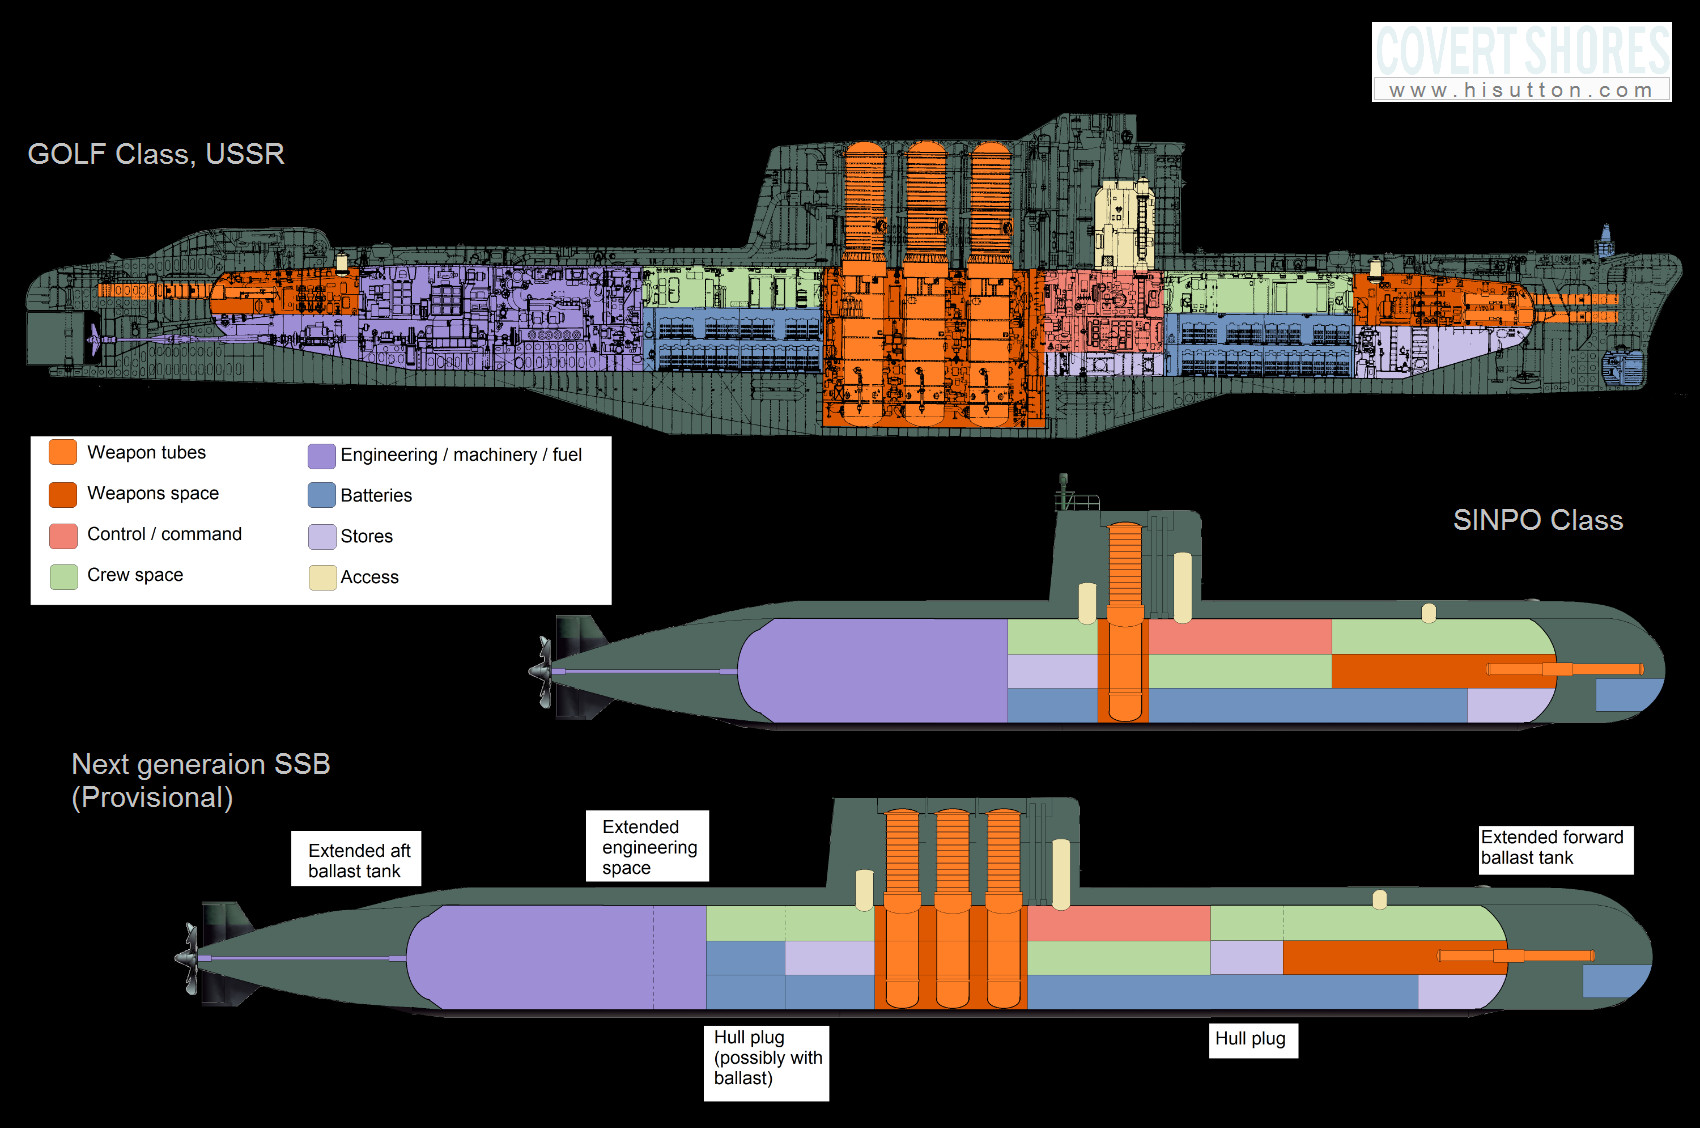 世界常规潜艇与核潜艇剖面结构图